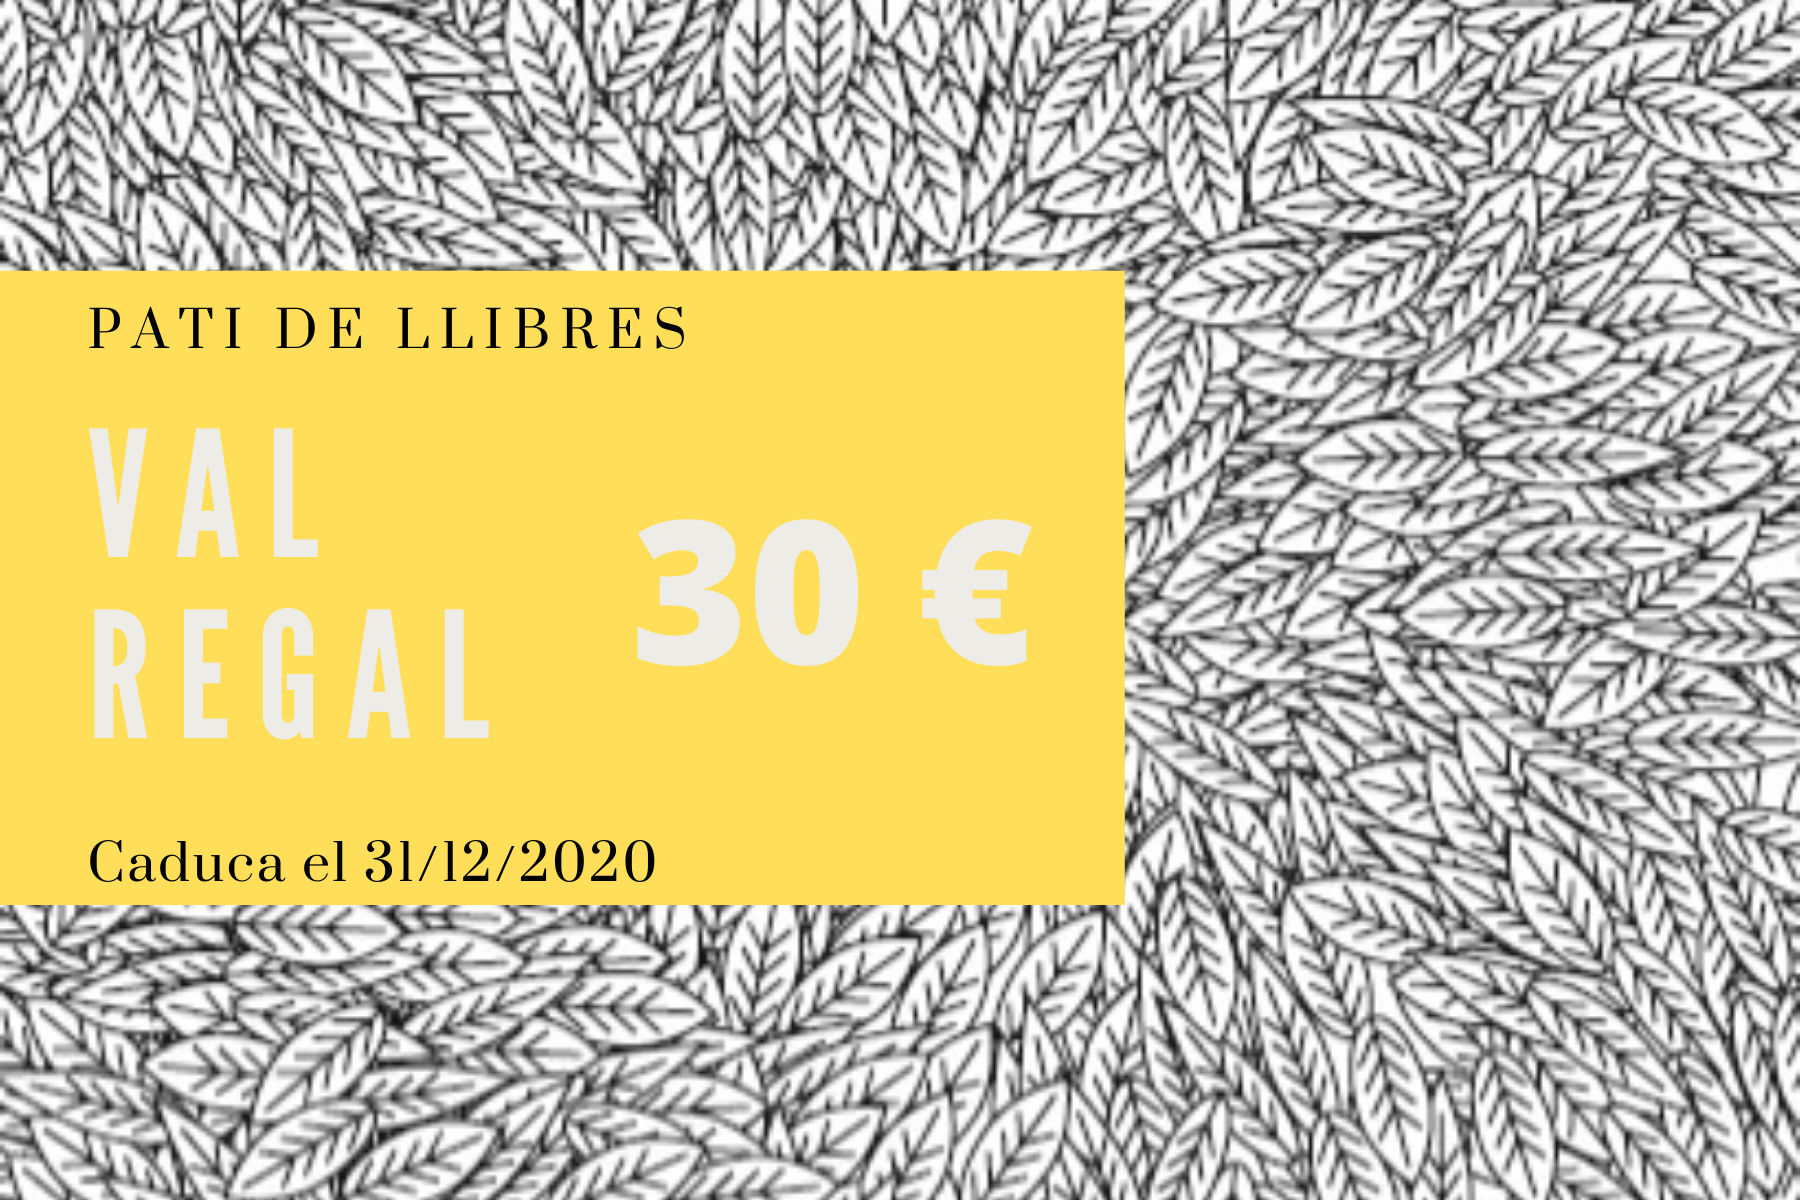 Val regal 30 euros - Pati de Llibres